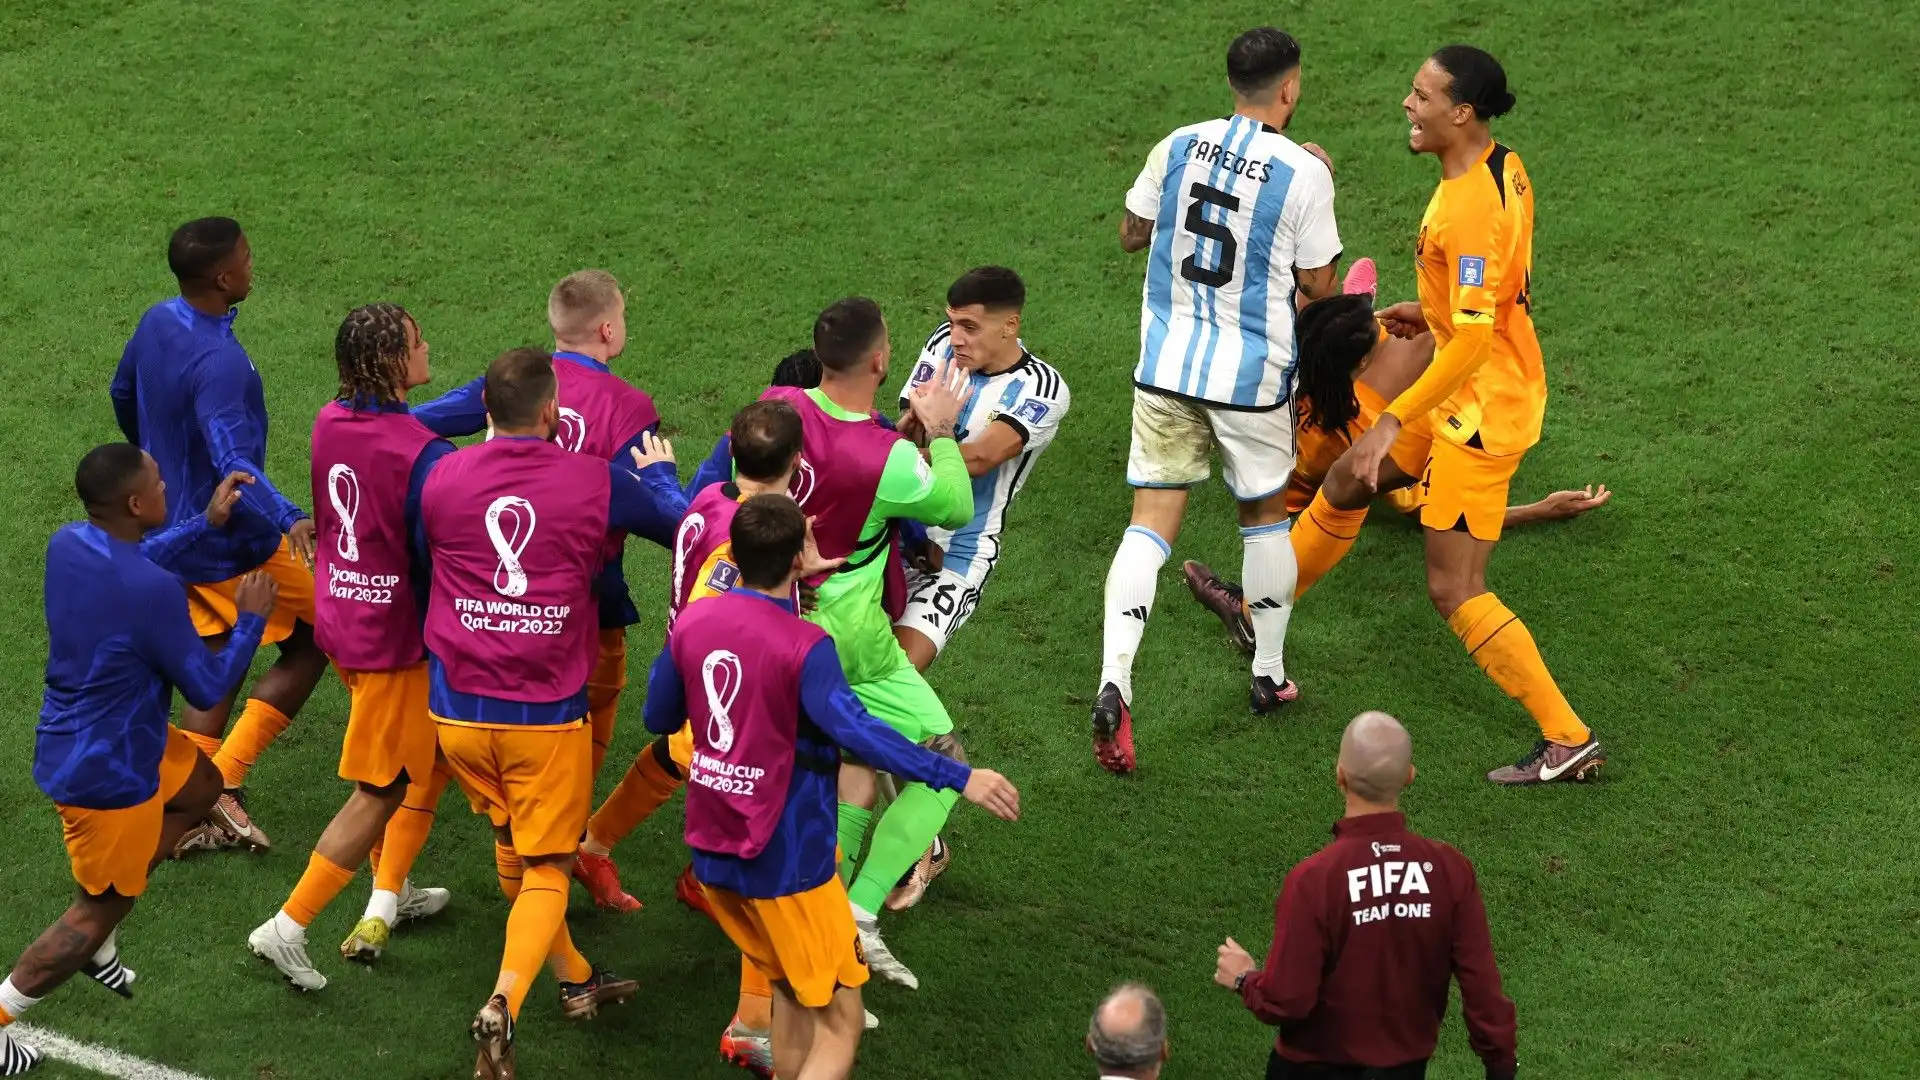 Nonostante la furia dell'Olanda, infatti, proprio l'Argentina ha conquistato la semifinale realizzando quattro rigori contro i tre degli avversari.